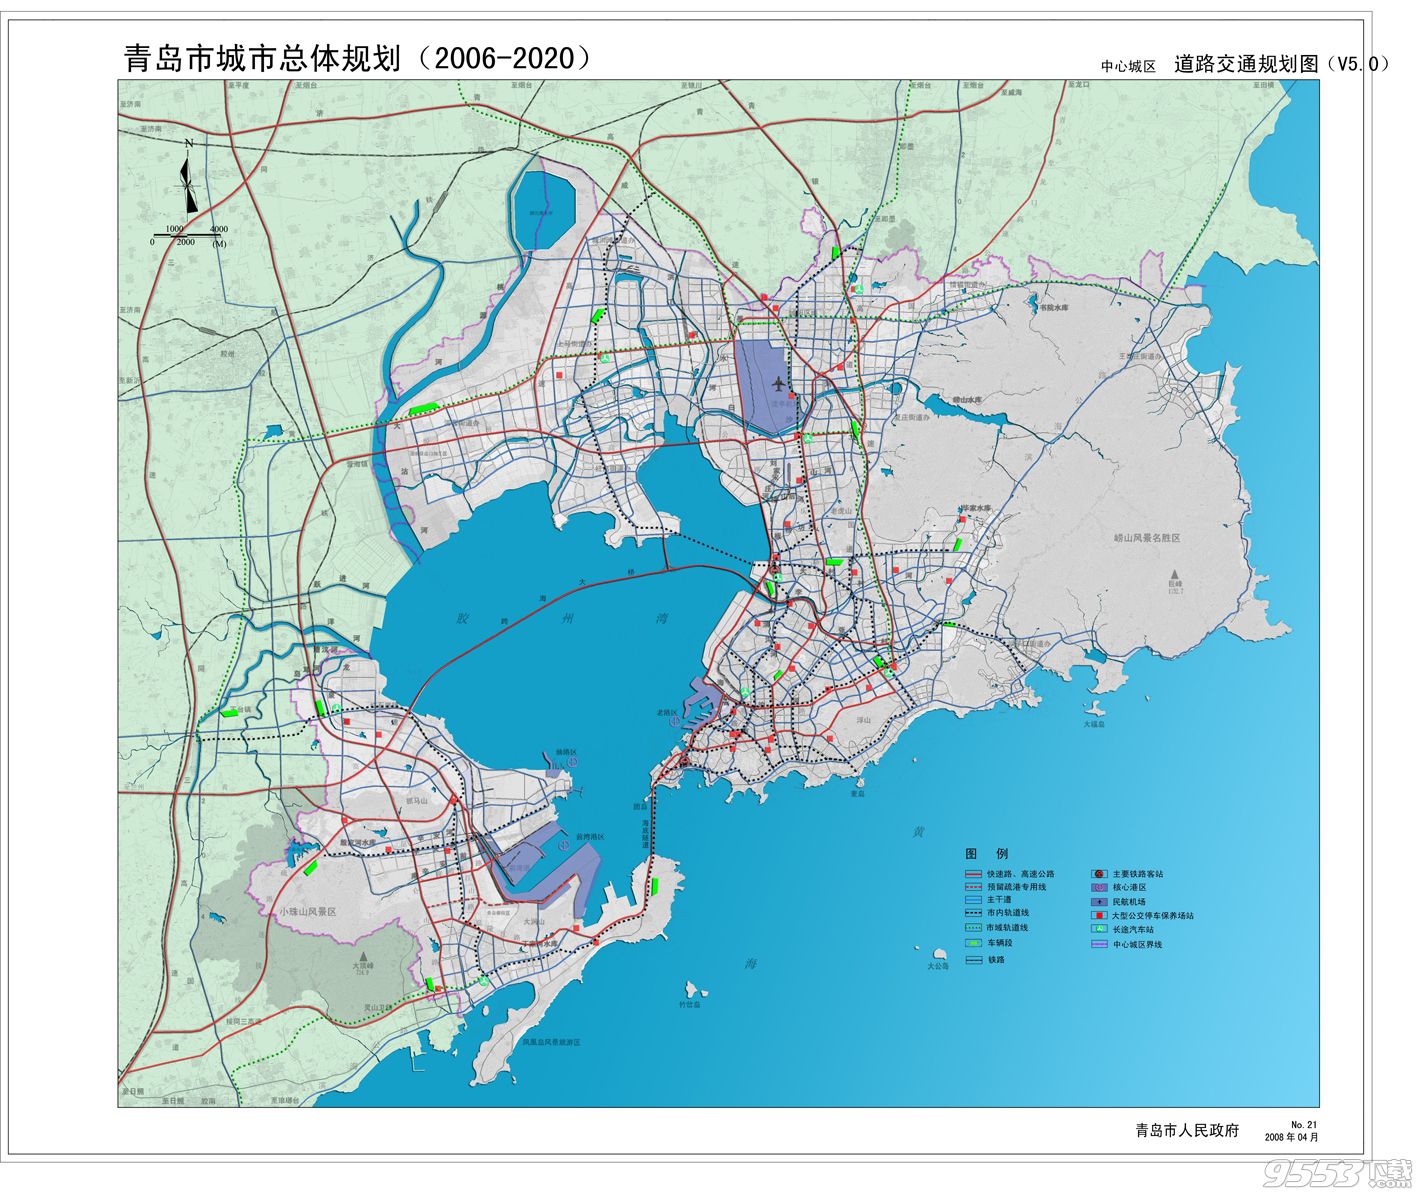 青岛旅游地图高清版|青岛市城市电子矢量地图